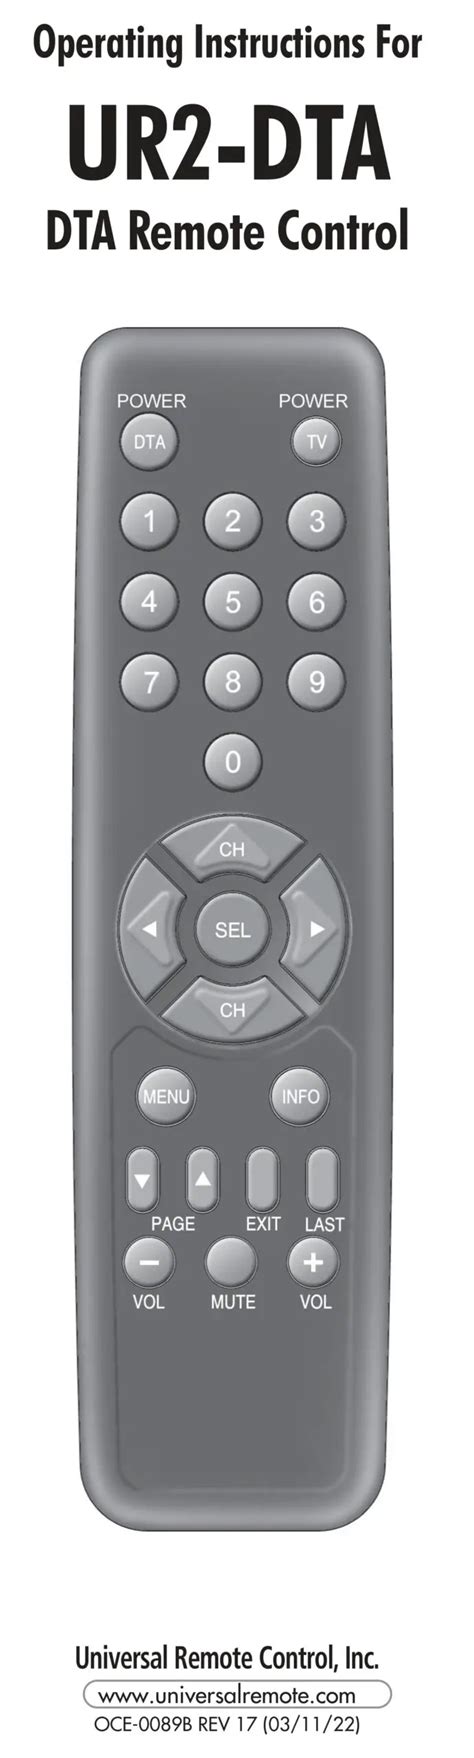 Delta dta remote control user manual. - Yamaha tx 750 manuale di servizio.